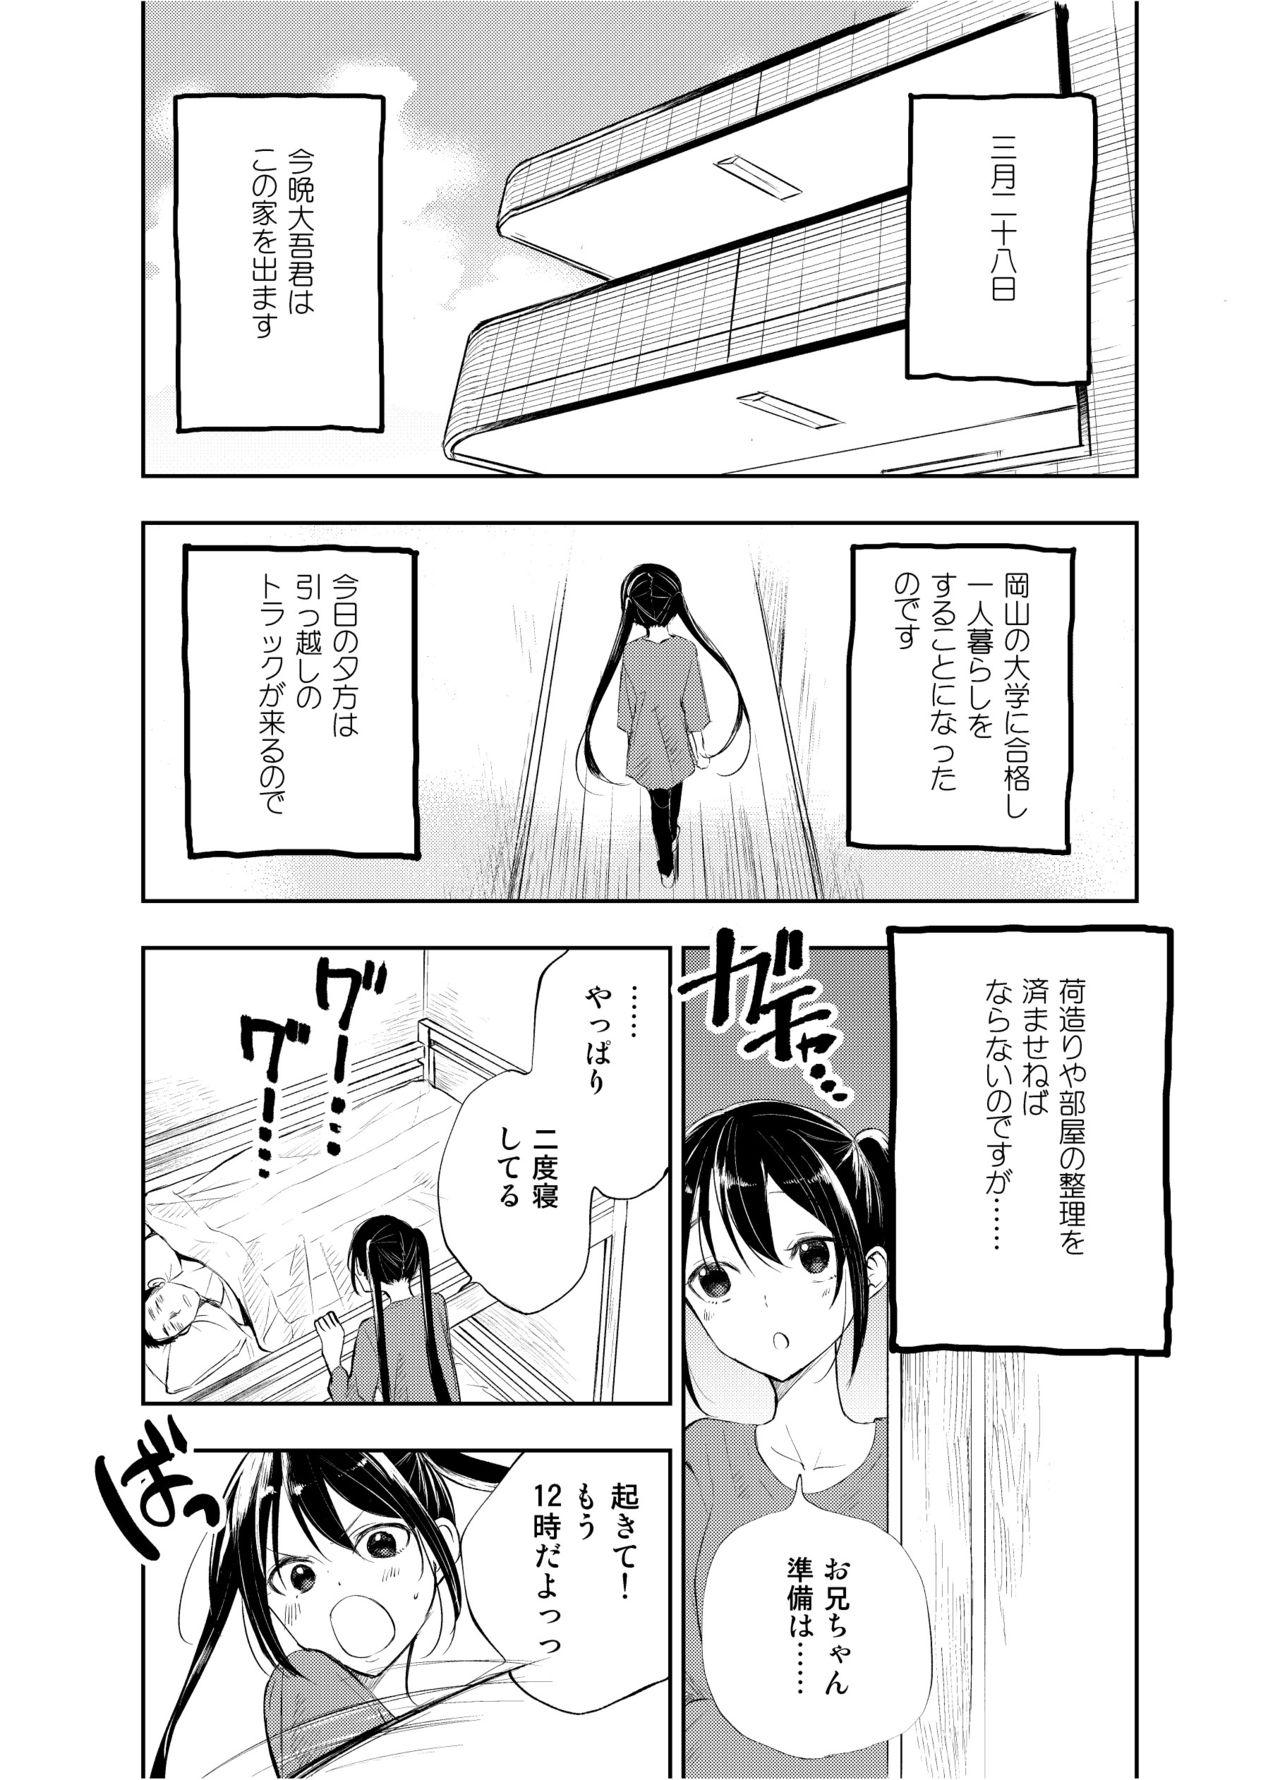 Insane Porn Onii-chan tte Hontou Ona Saru! 2 Tall - Page 2